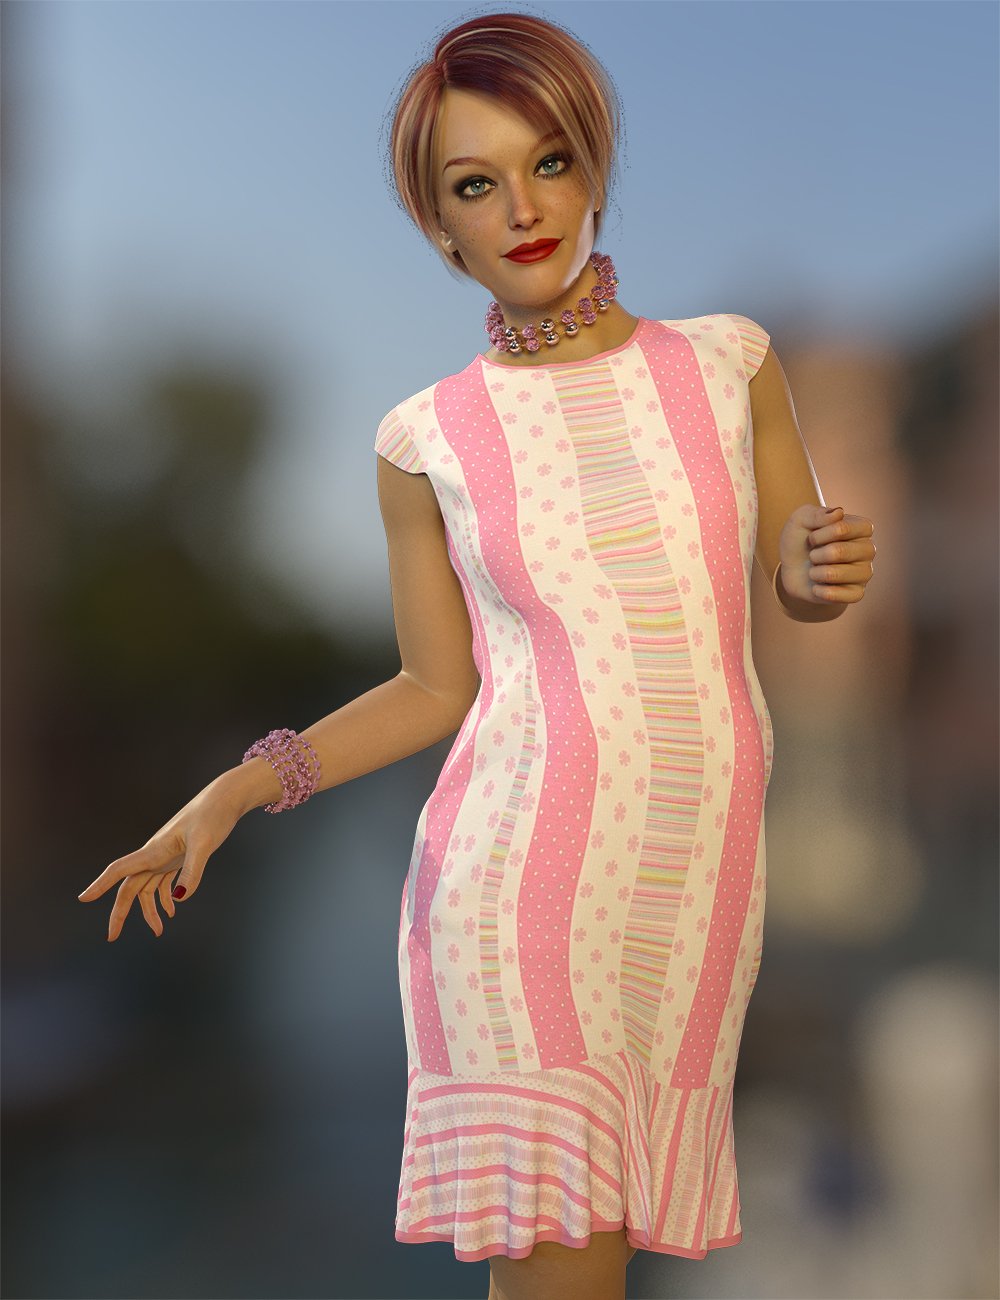 dForce Amelia Outfit Texture Expansion